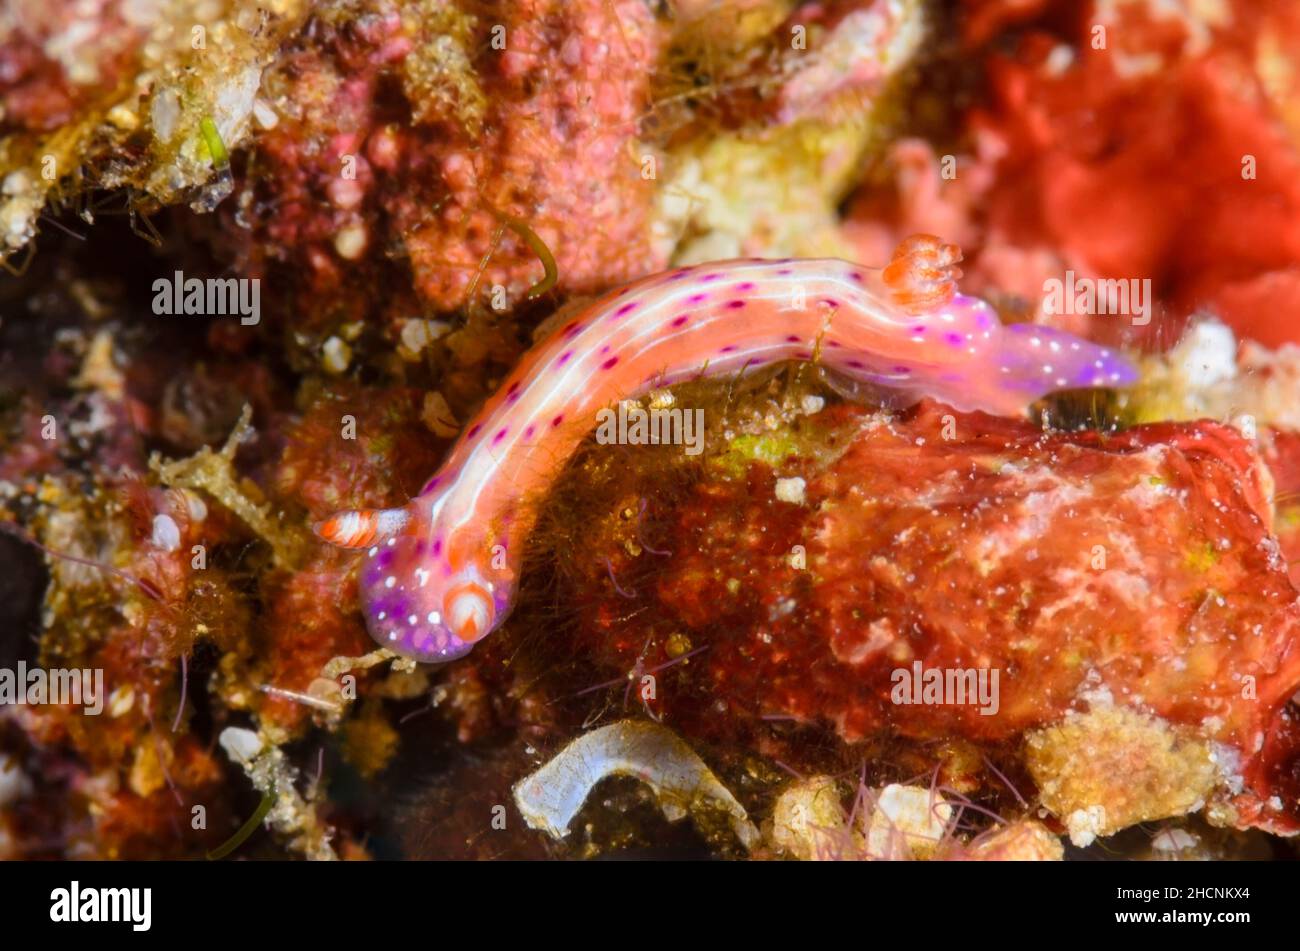 sea slug or nudibranch, Hypselodoris maculosa, Alor, Nusa Tenggara, Indonesia, Pacific Stock Photo